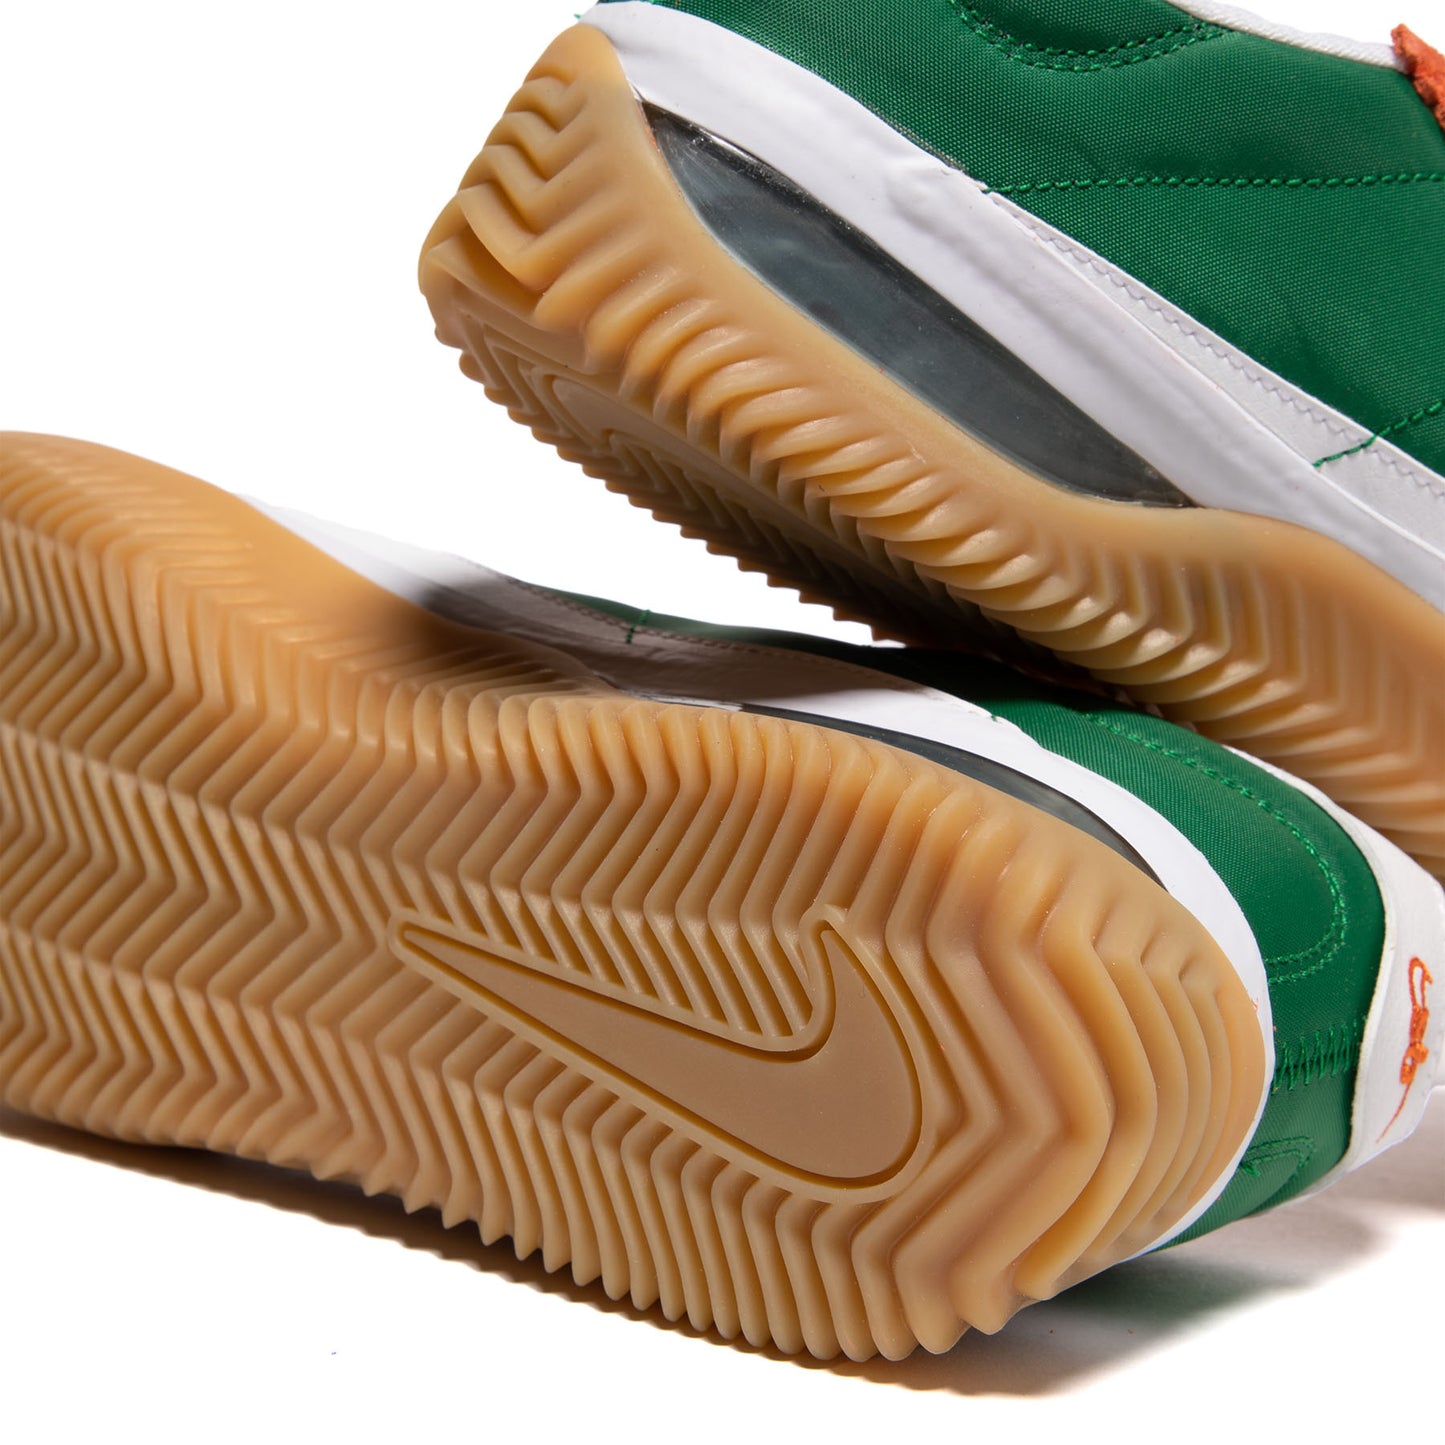 Nike BRSB (Deep Orange/White/Pine Green)